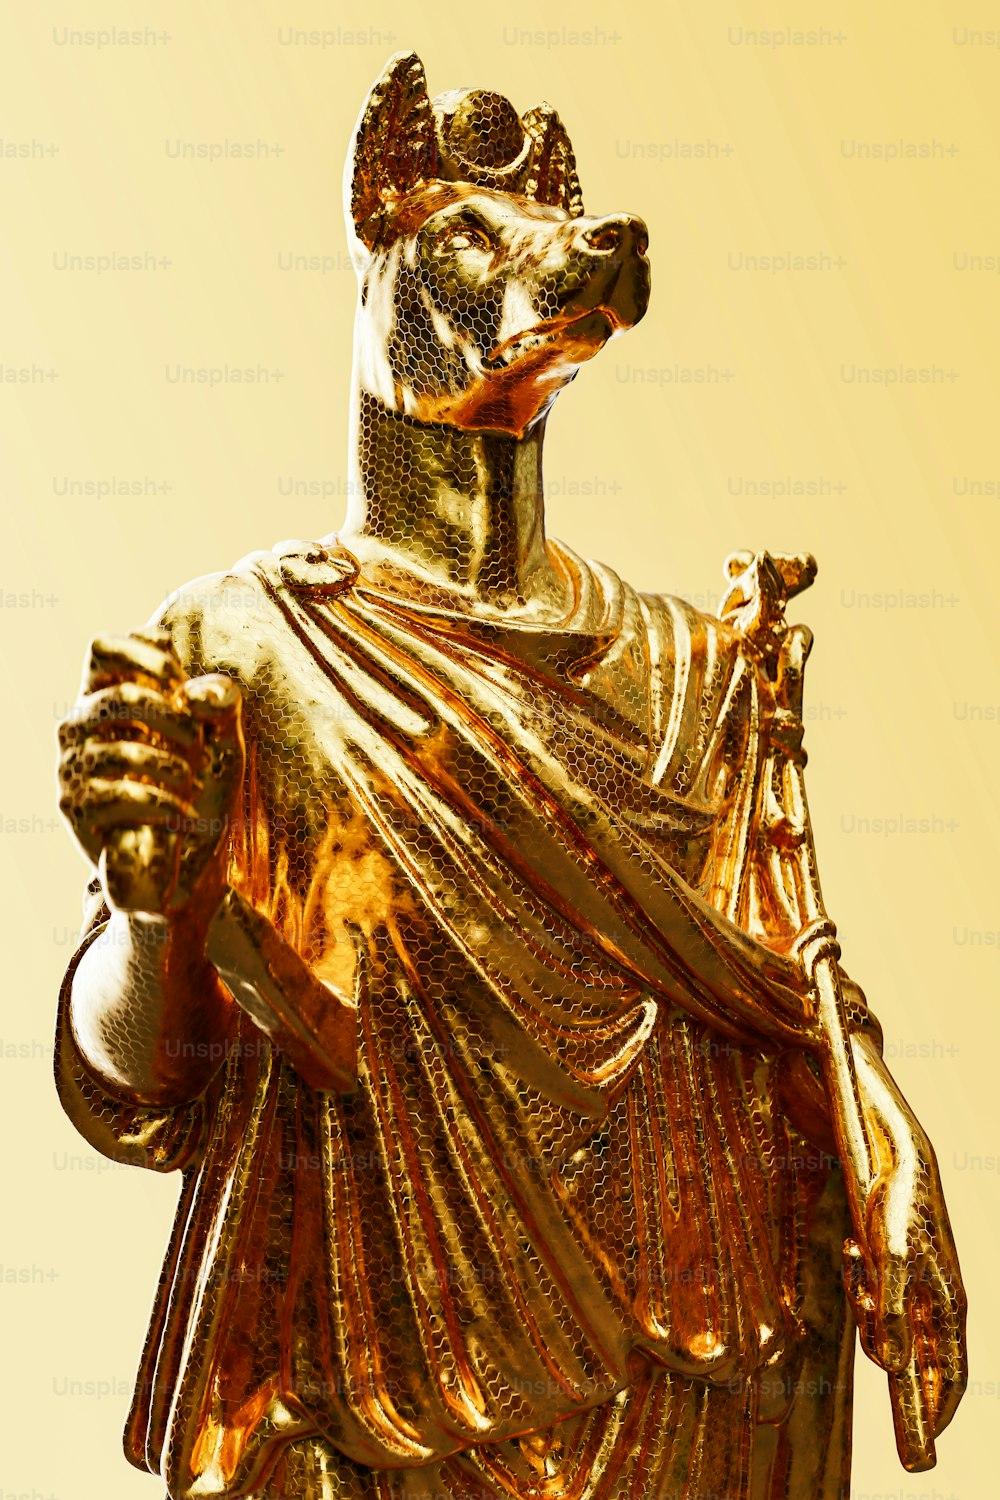 Una estatua dorada de un hombre con una corona en la cabeza